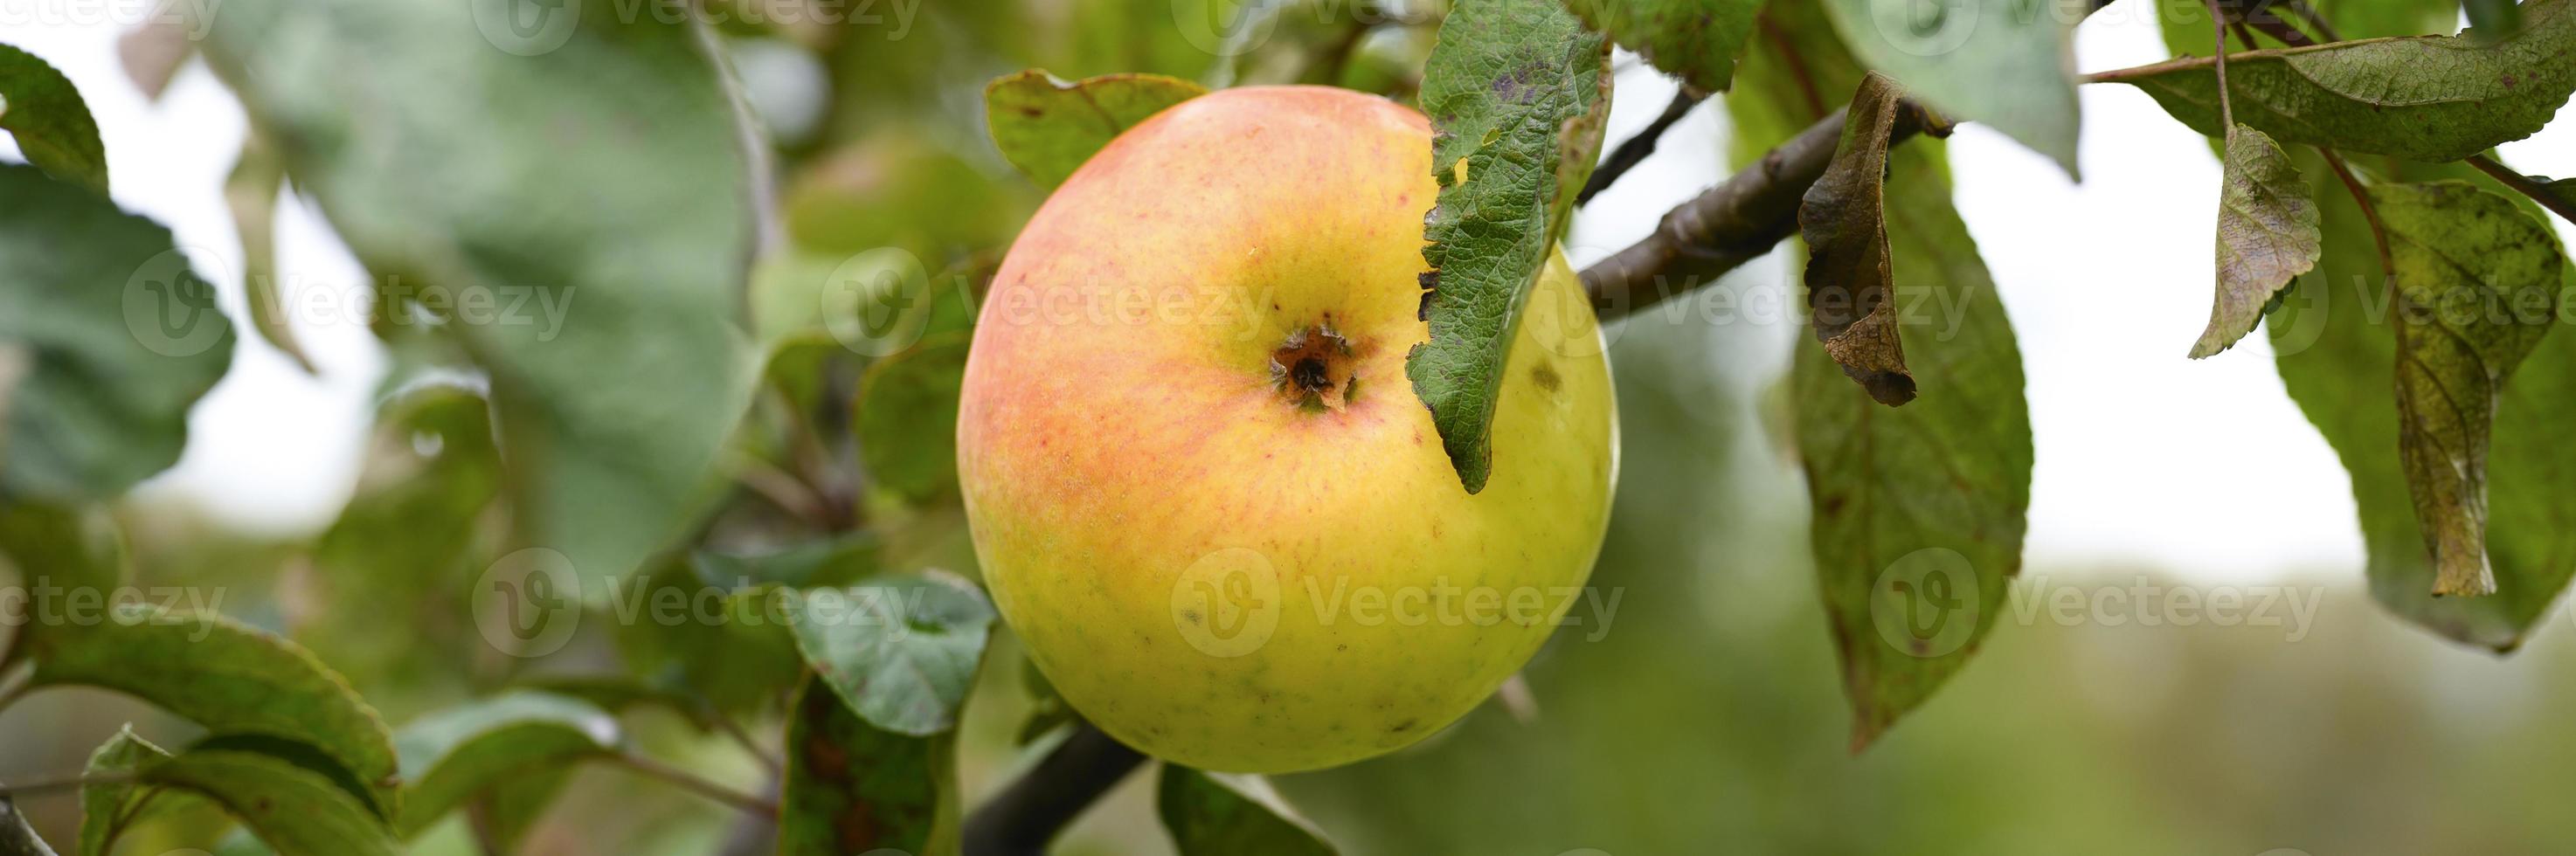 Manzanas maduras verdes rojas en una rama de un manzano en el jardín foto